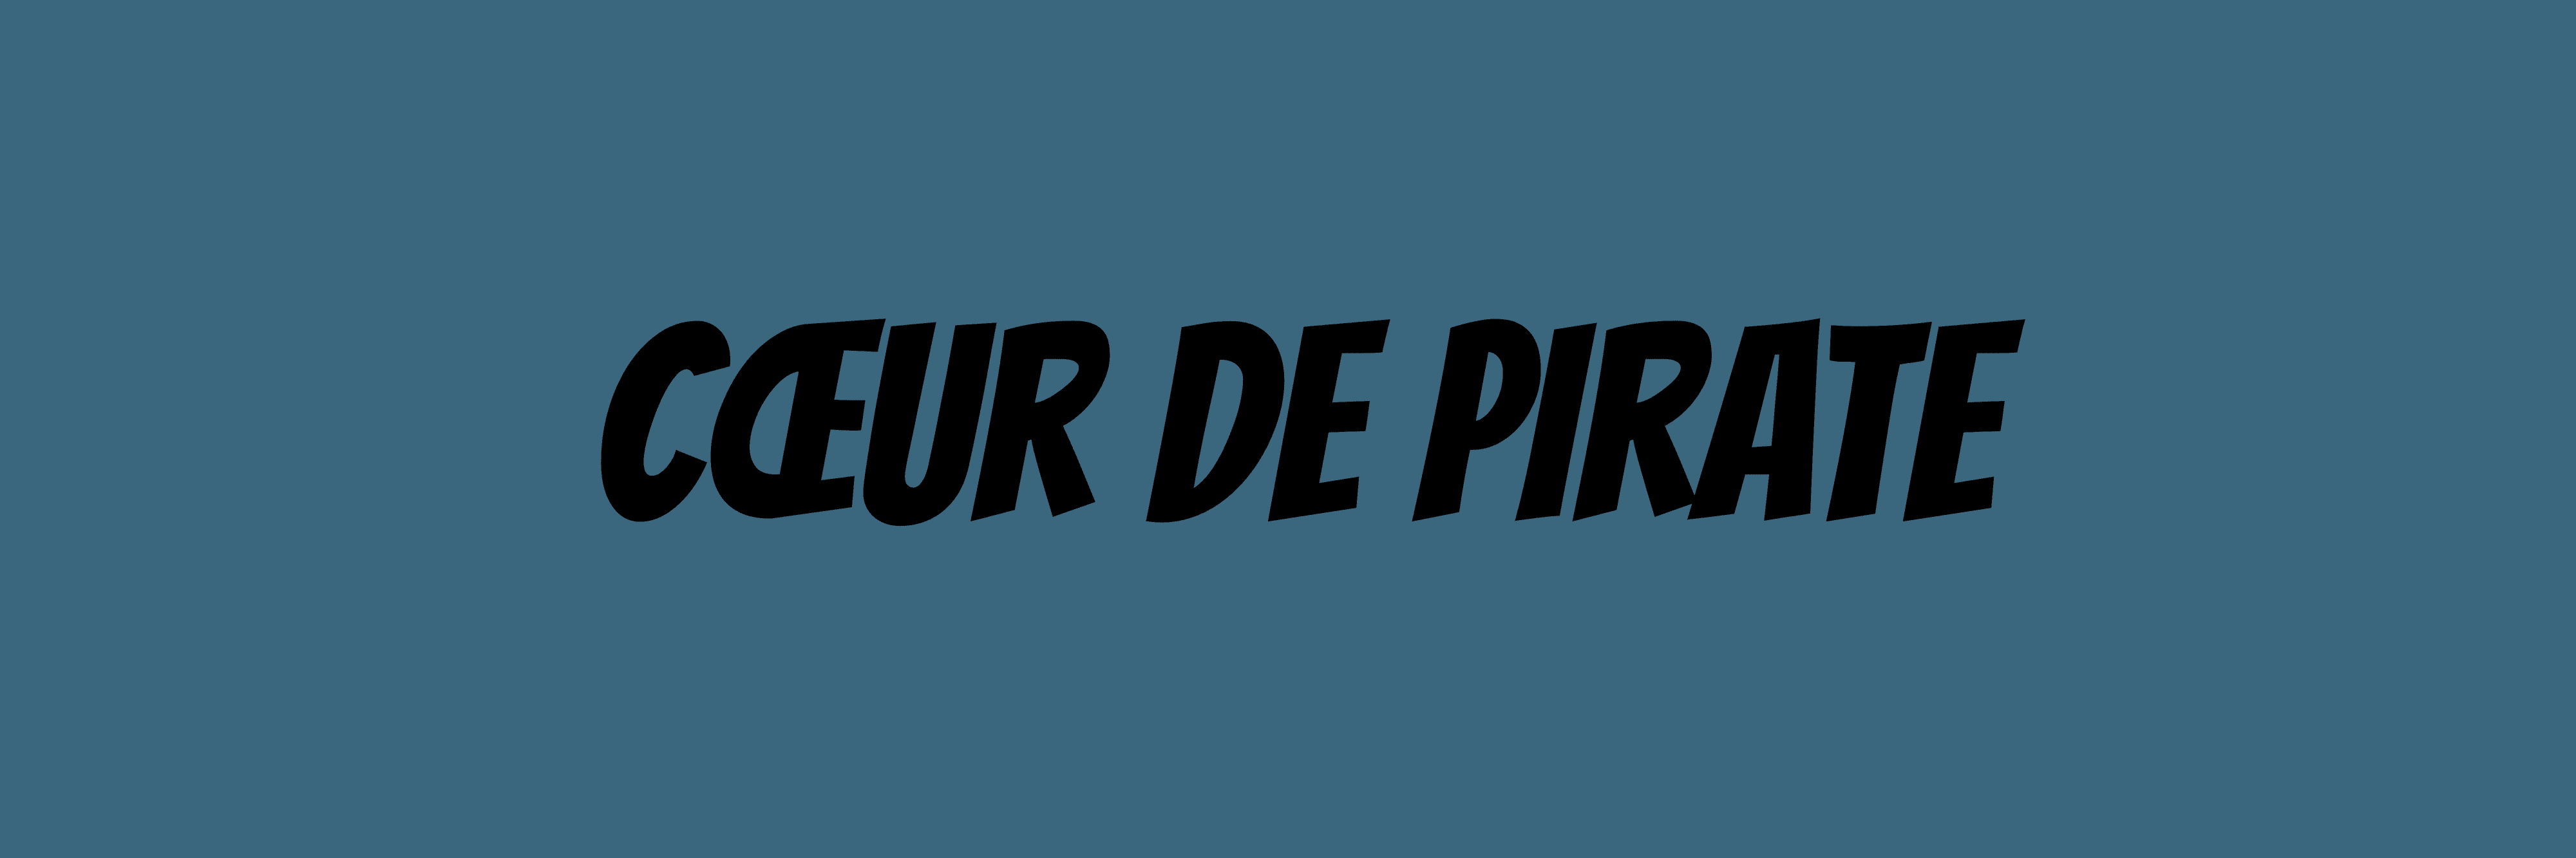 Coeur_de_pirate bannière